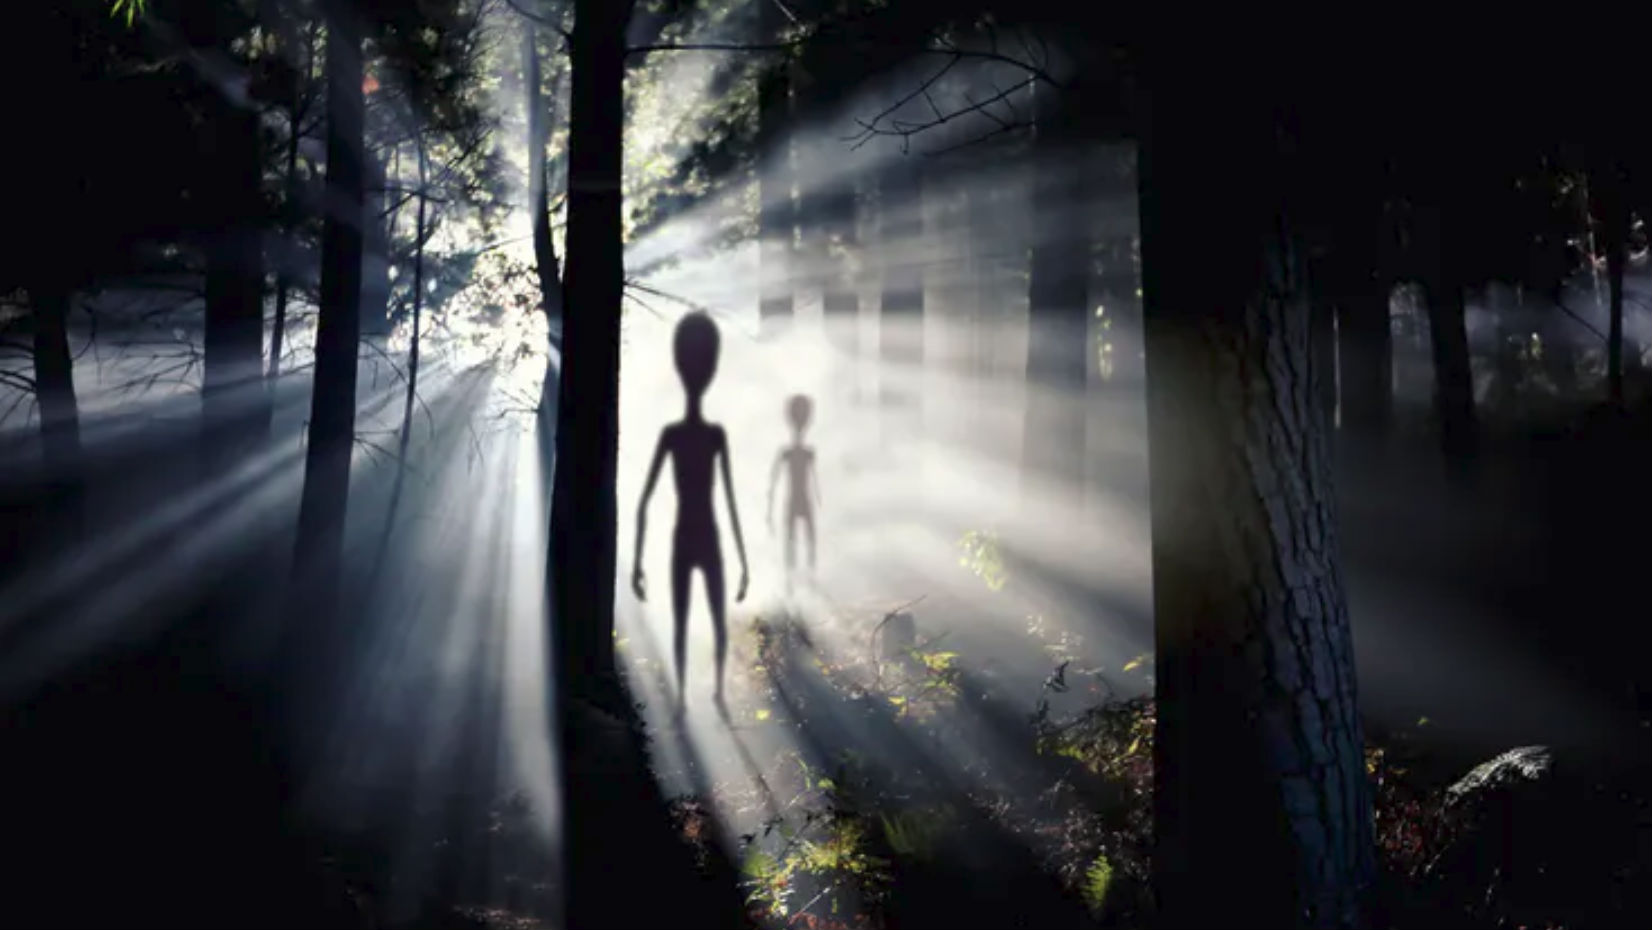 Aliens seen in the woods.